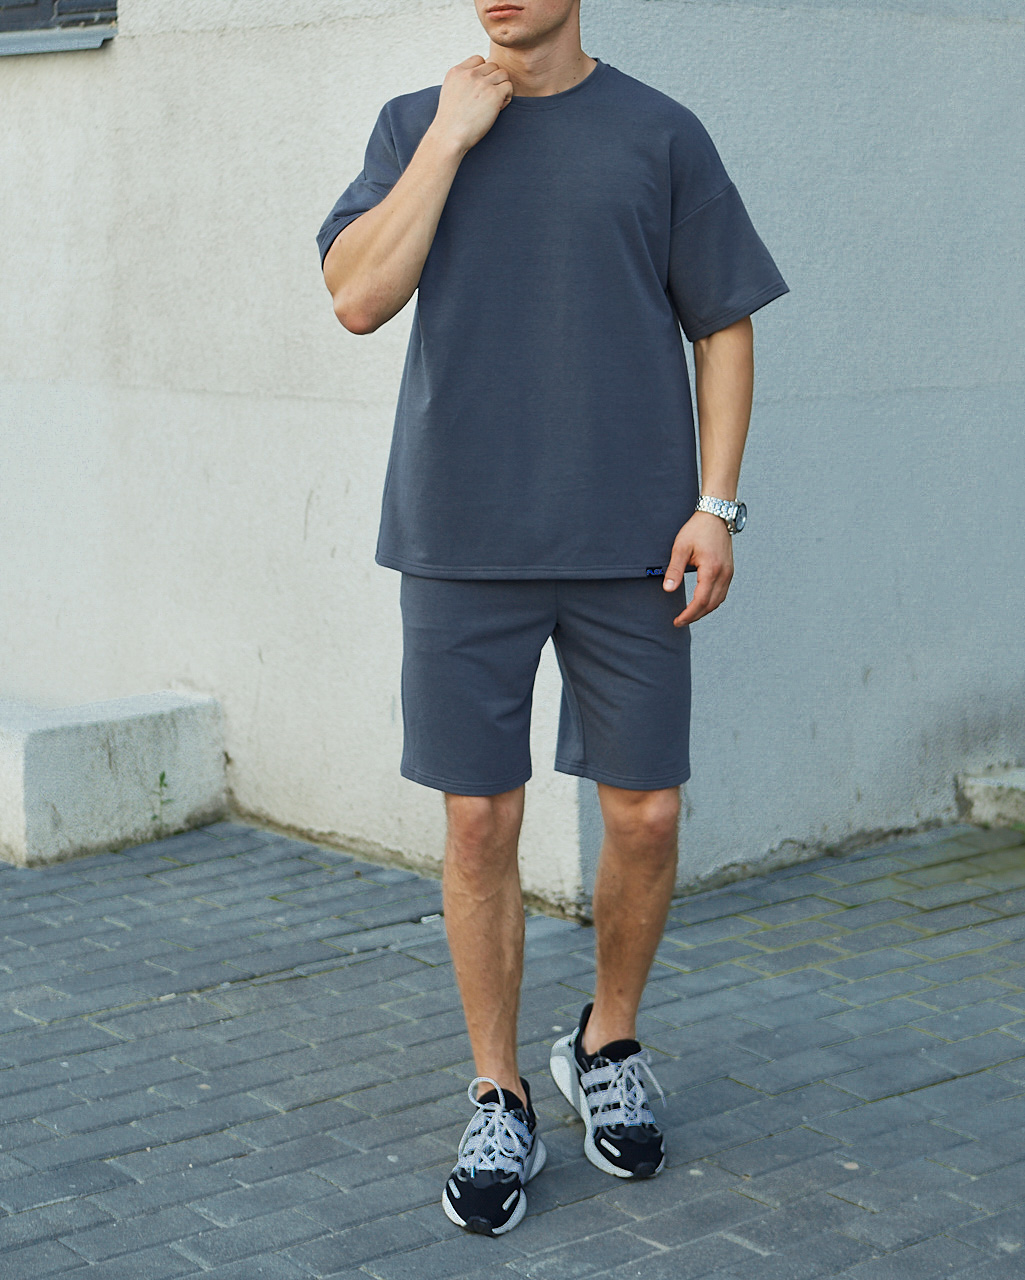 Літній комплект: сіра футболка чоловіча Quil (Квіл) сірі шорти чоловічі Duncan (Дункан) TURWEAR - Фото 4